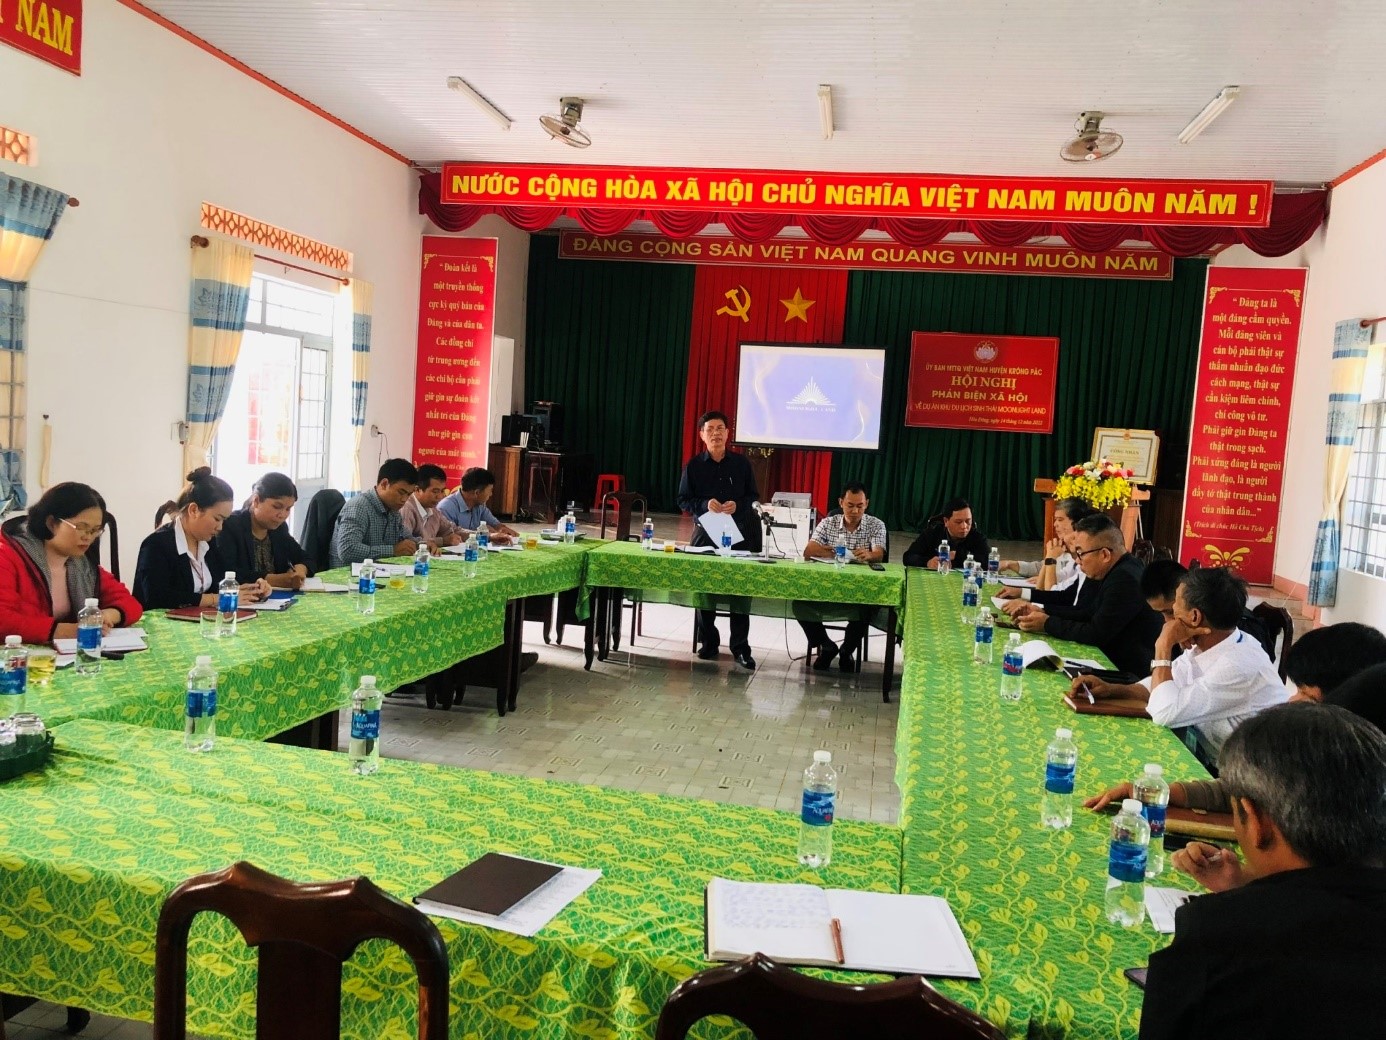 Ủy ban MTTQ Việt Nam huyện Krông Pắc: Tổ chức Hội Nghị Phản biện xã hội về dự án Khu du lịch sinh thái điện ảnh Moonlight Land ( Vùng đất ánh trăng)